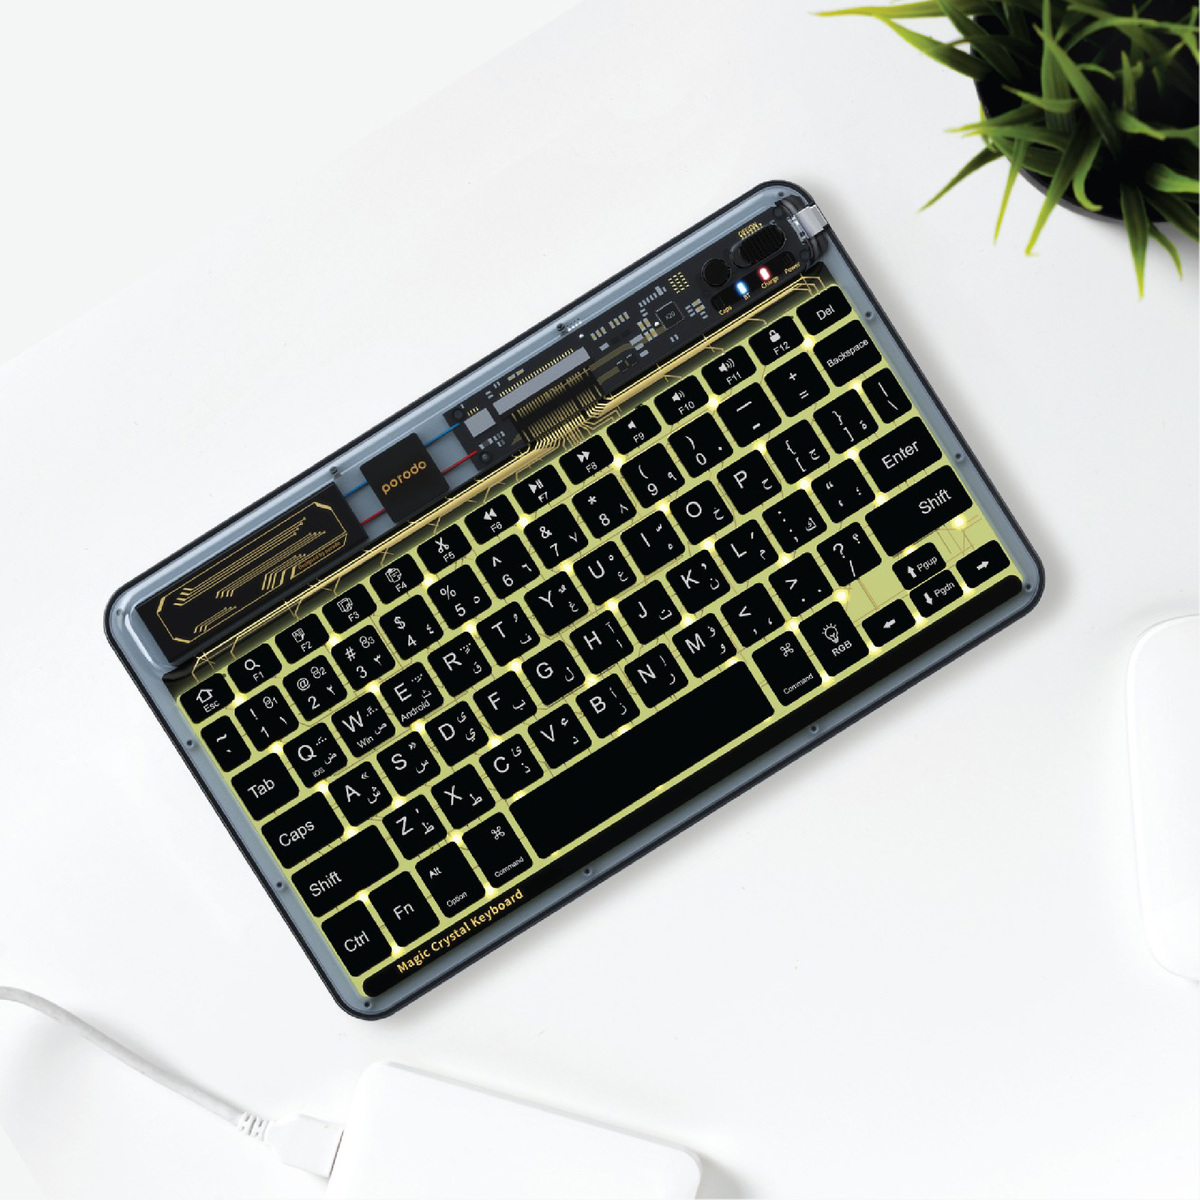 Porodo Crystal Shell Ultra-Slim Keyboard - Black TRPBTKB Bk